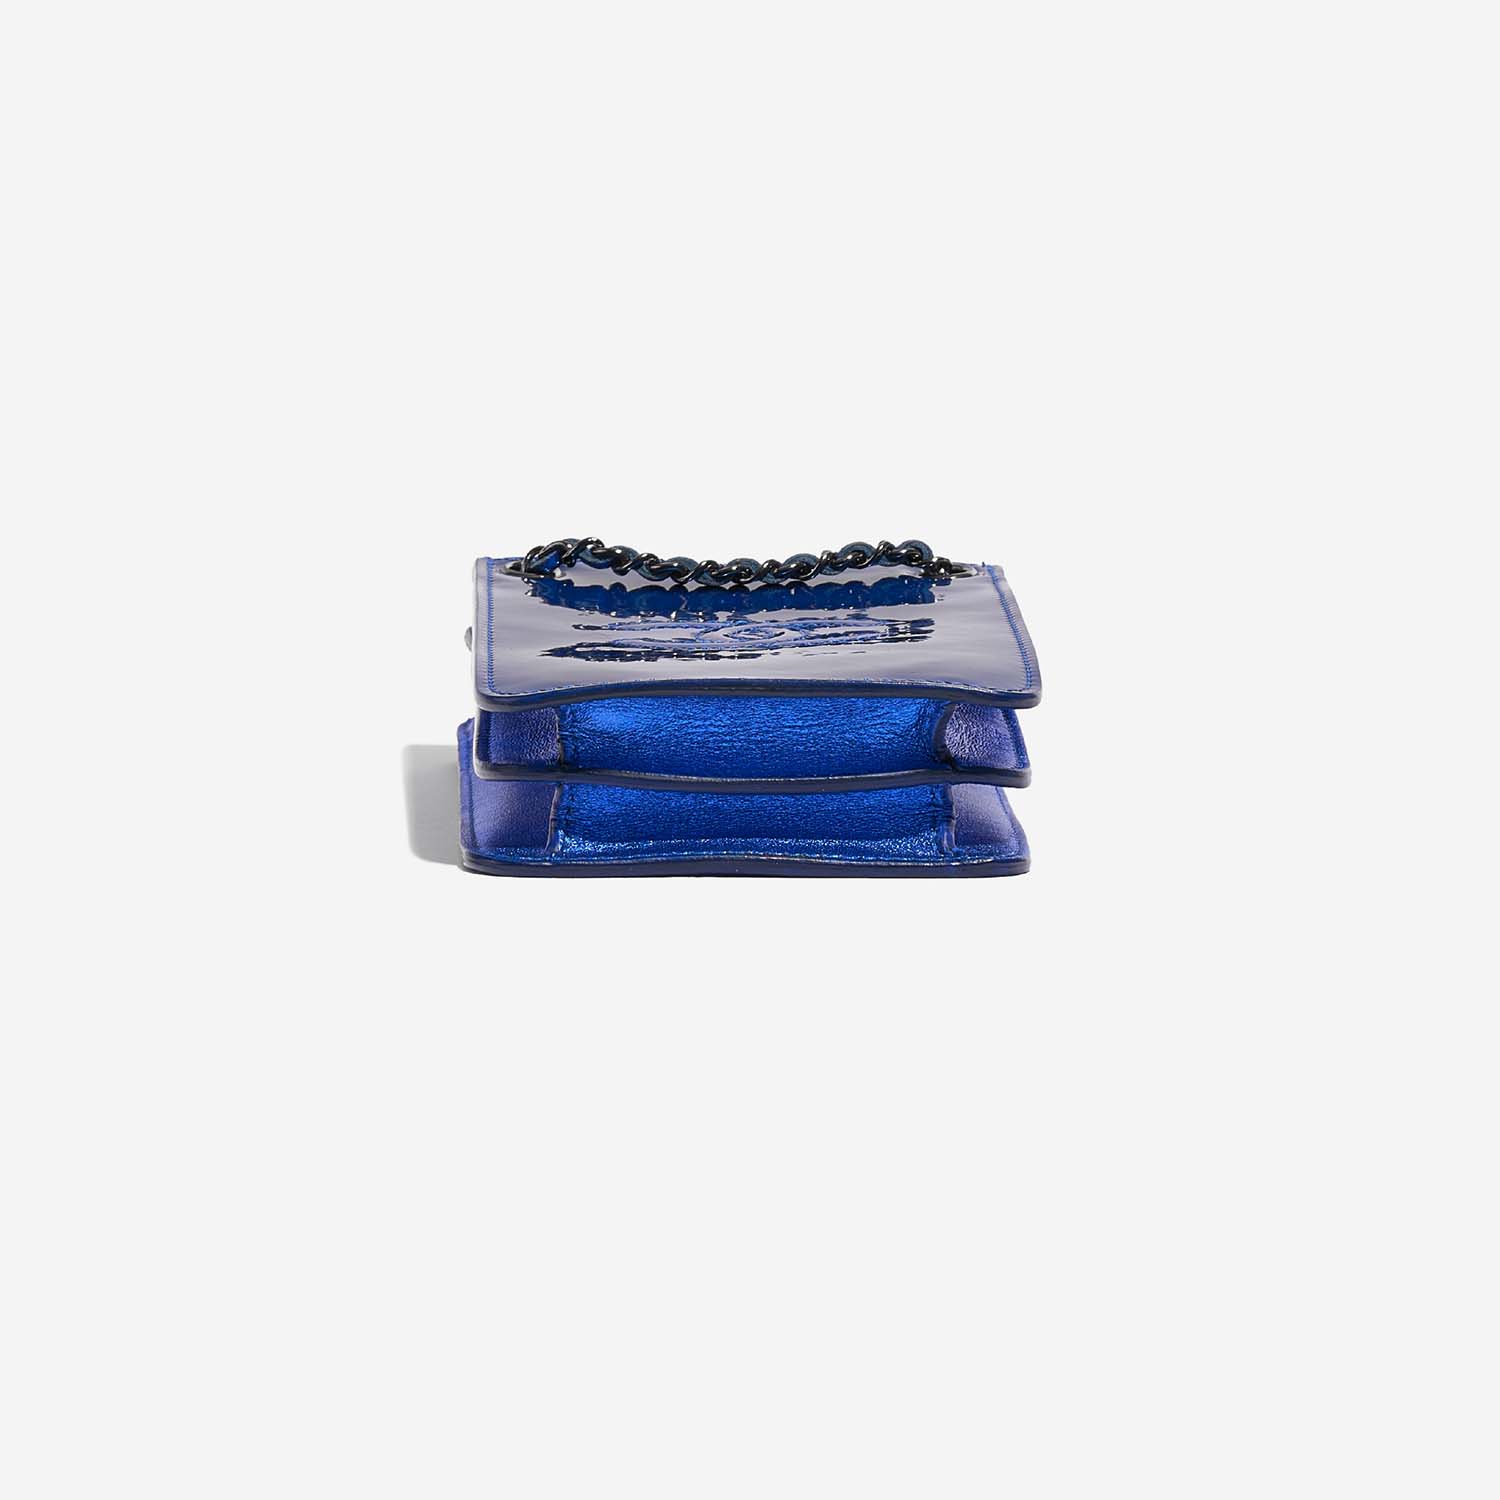 Chanel PhoneHolder MetallicBlue Bottom | Verkaufen Sie Ihre Designer-Tasche auf Saclab.com